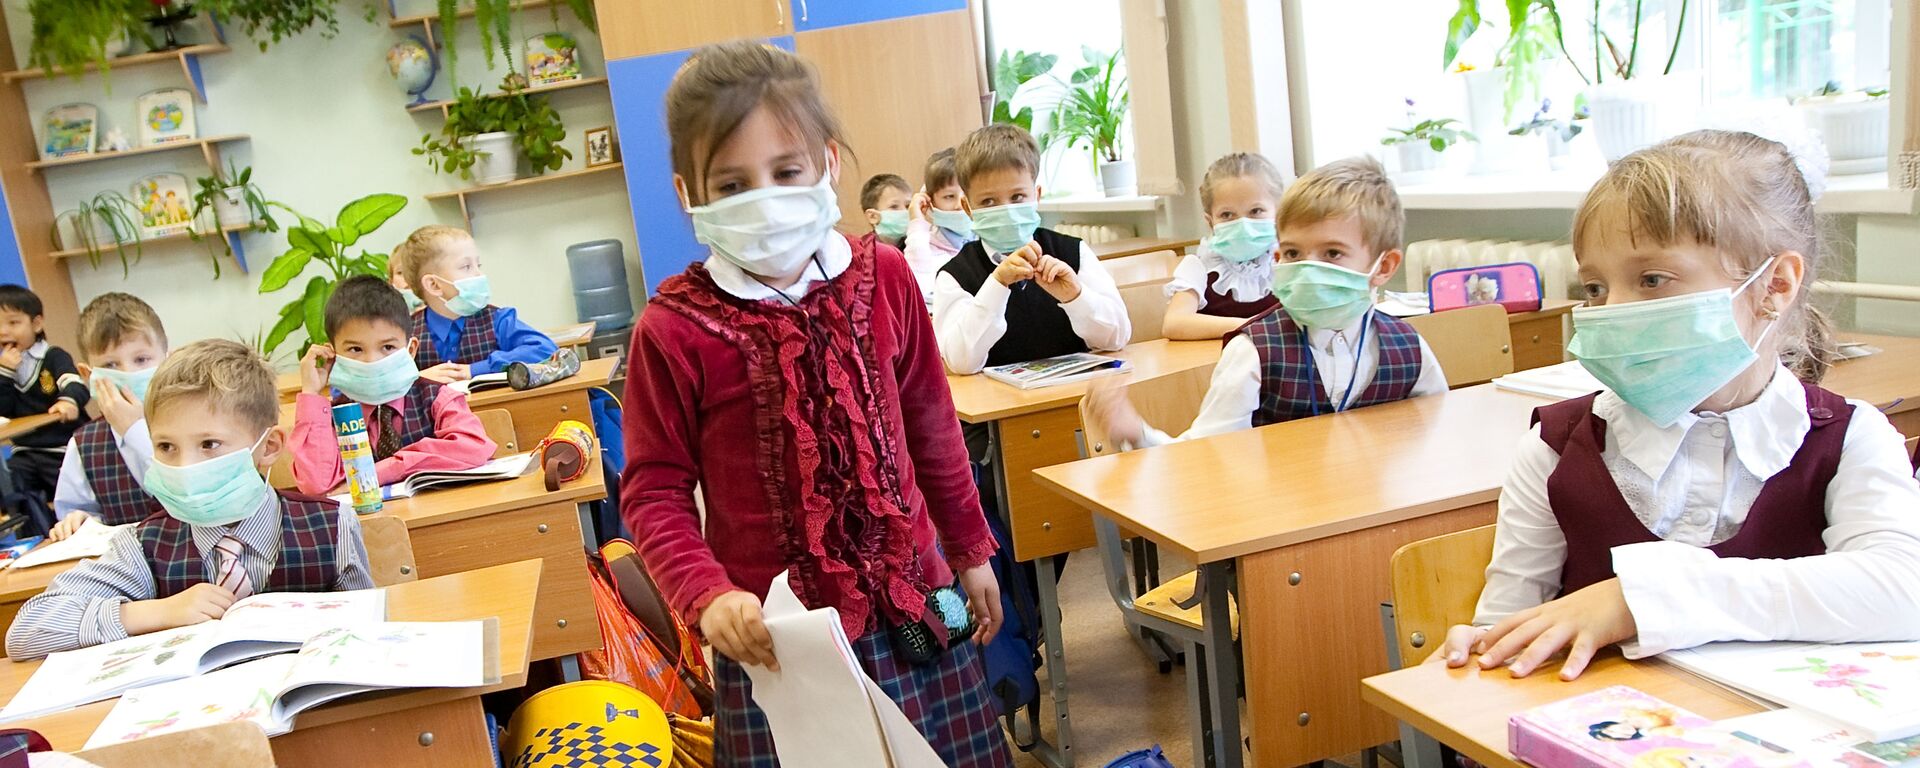 Школьники младших классов в защитных масках - Sputnik Латвия, 1920, 05.02.2021